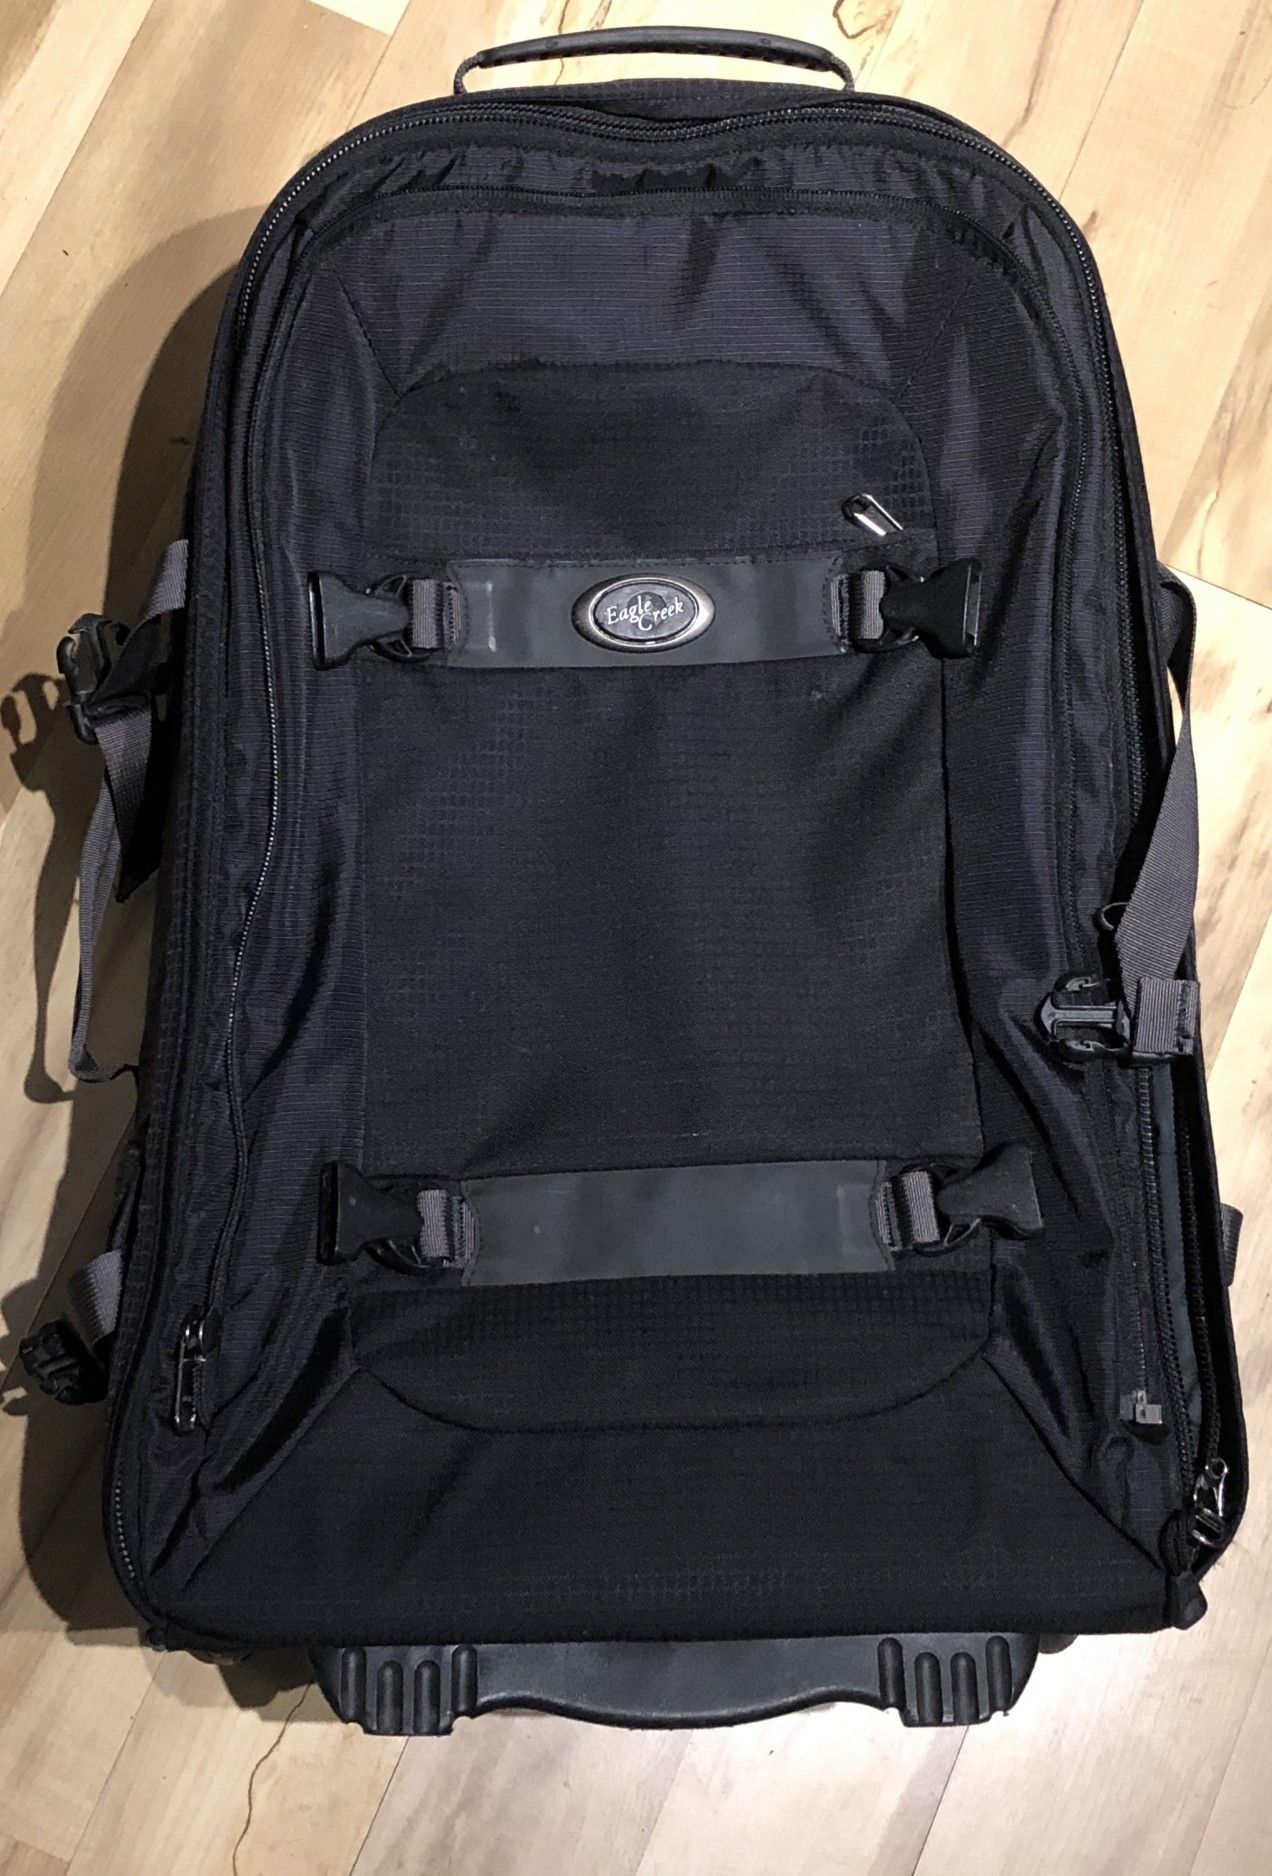 Eagle Creek Switchback backpack/travel bag